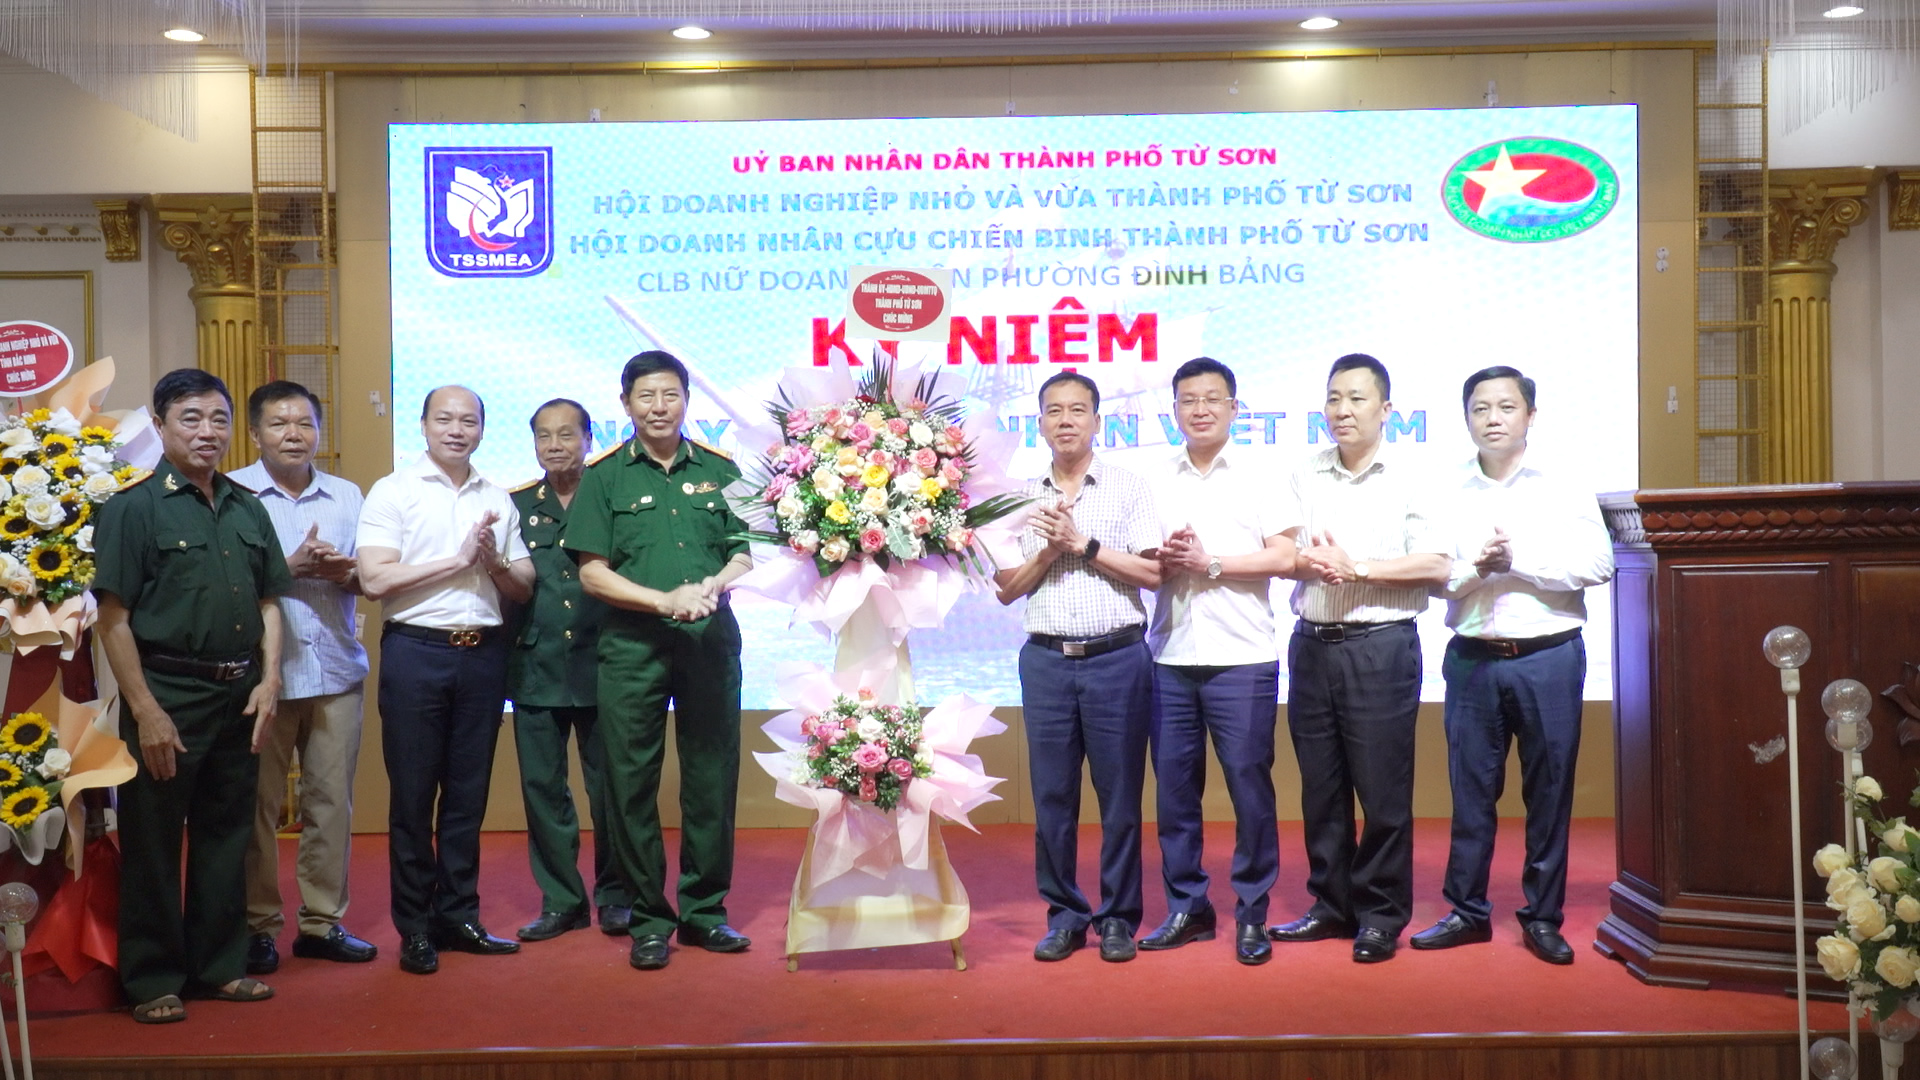 Hội doạnh nghiệp nhỏ và vừa - Hội doanh nhân CCB thành phố kỷ niệm Ngày doanh nhân Việt Nam